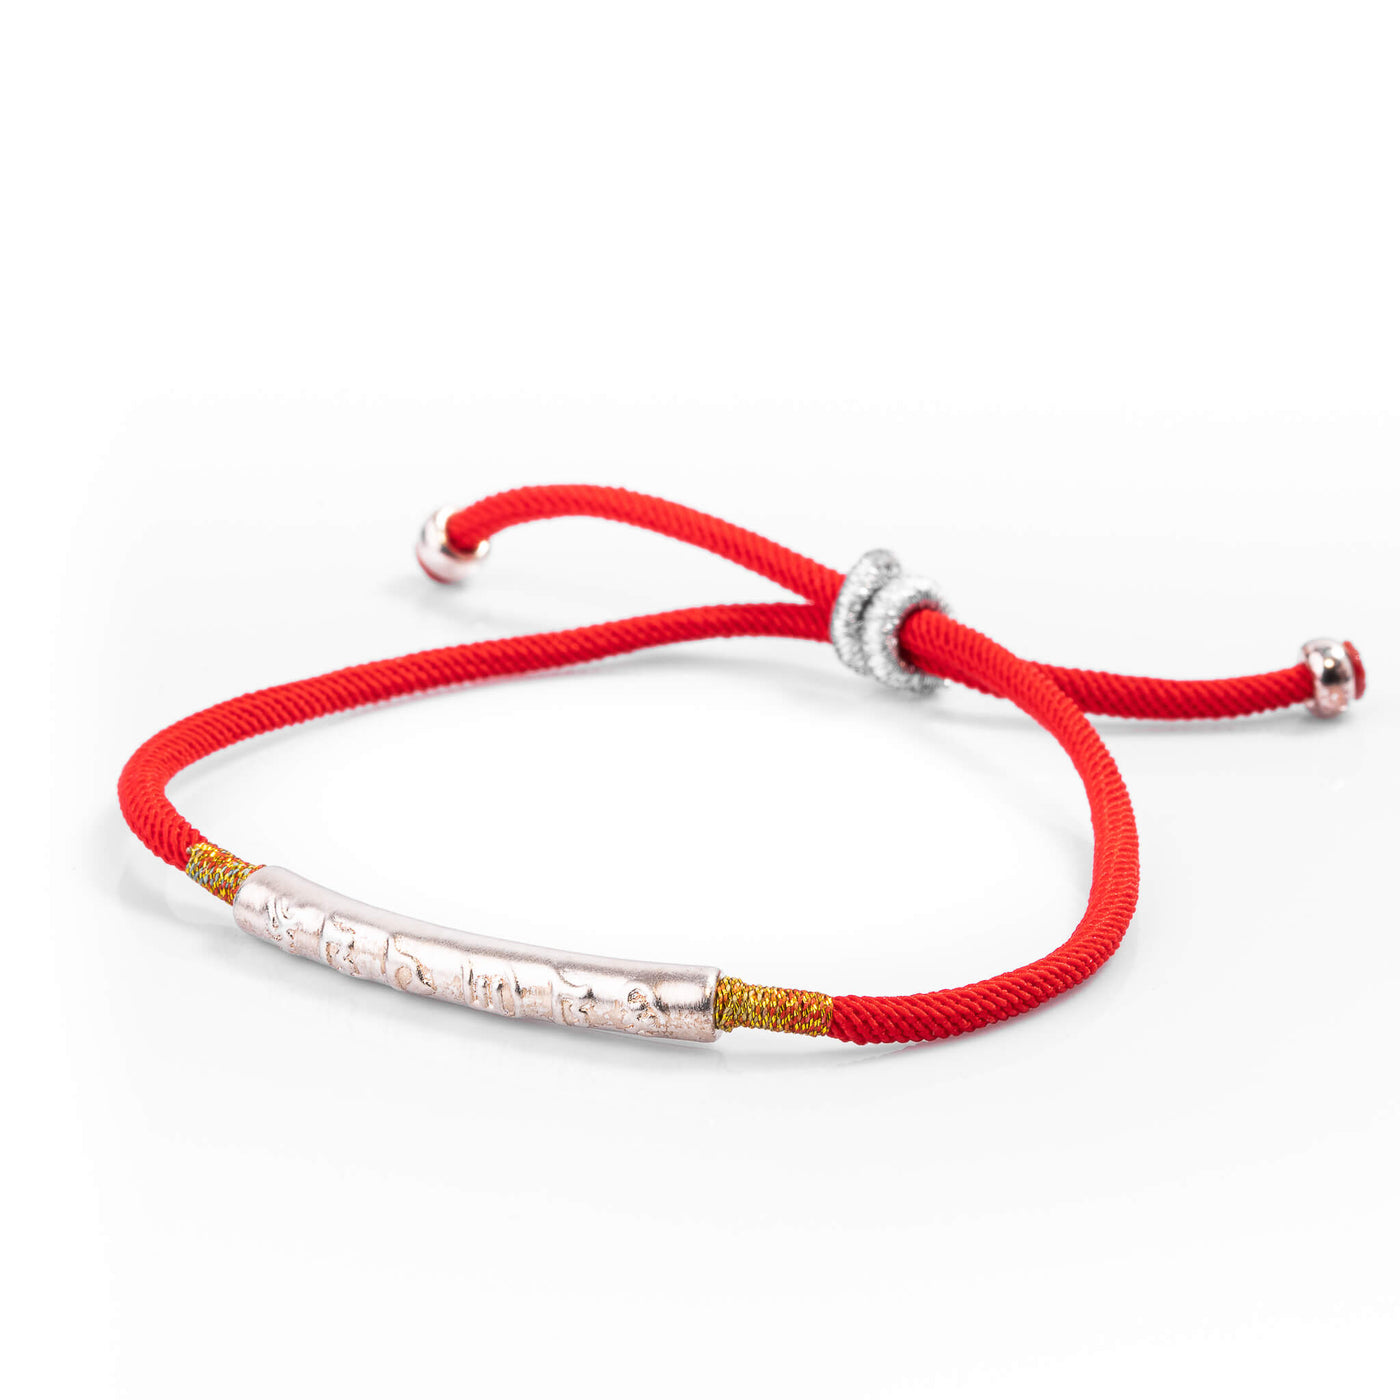 Karma and Luck Effortless Manifestation - Red String Bracelet: Red